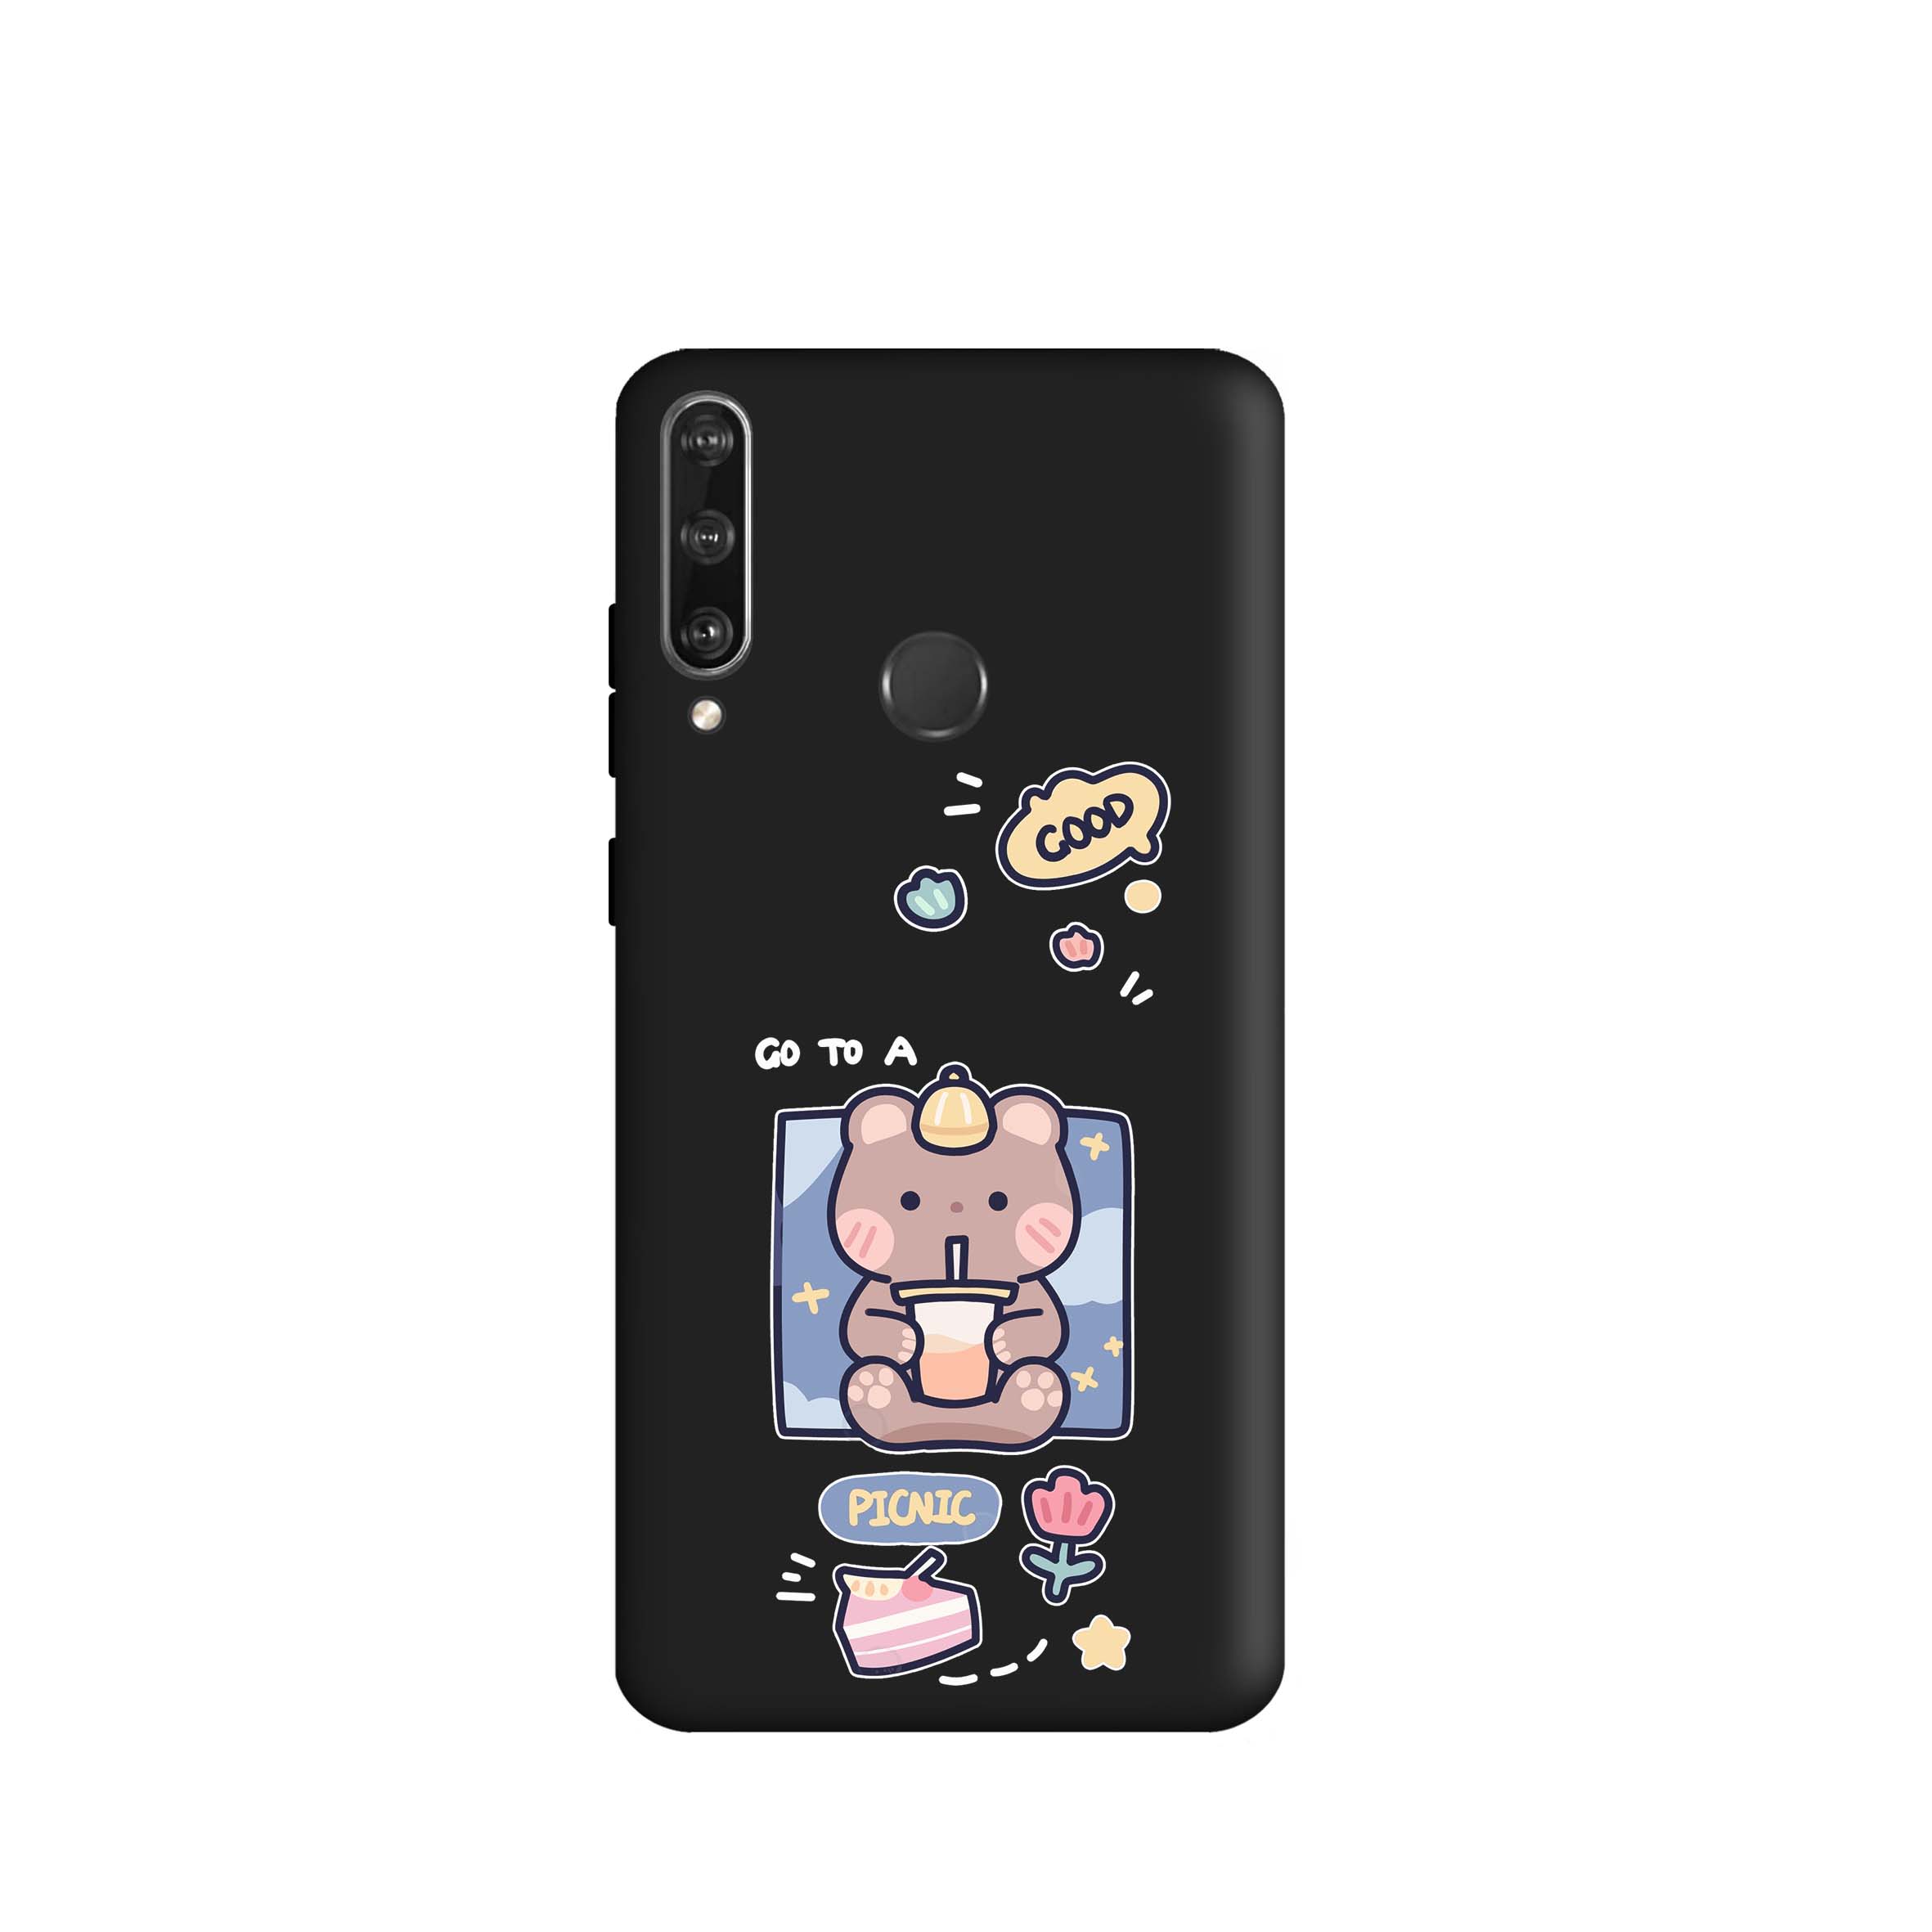 کاور طرح خرس شکمو کد m3610 مناسب برای گوشی موبایل هوآوی Y6 P